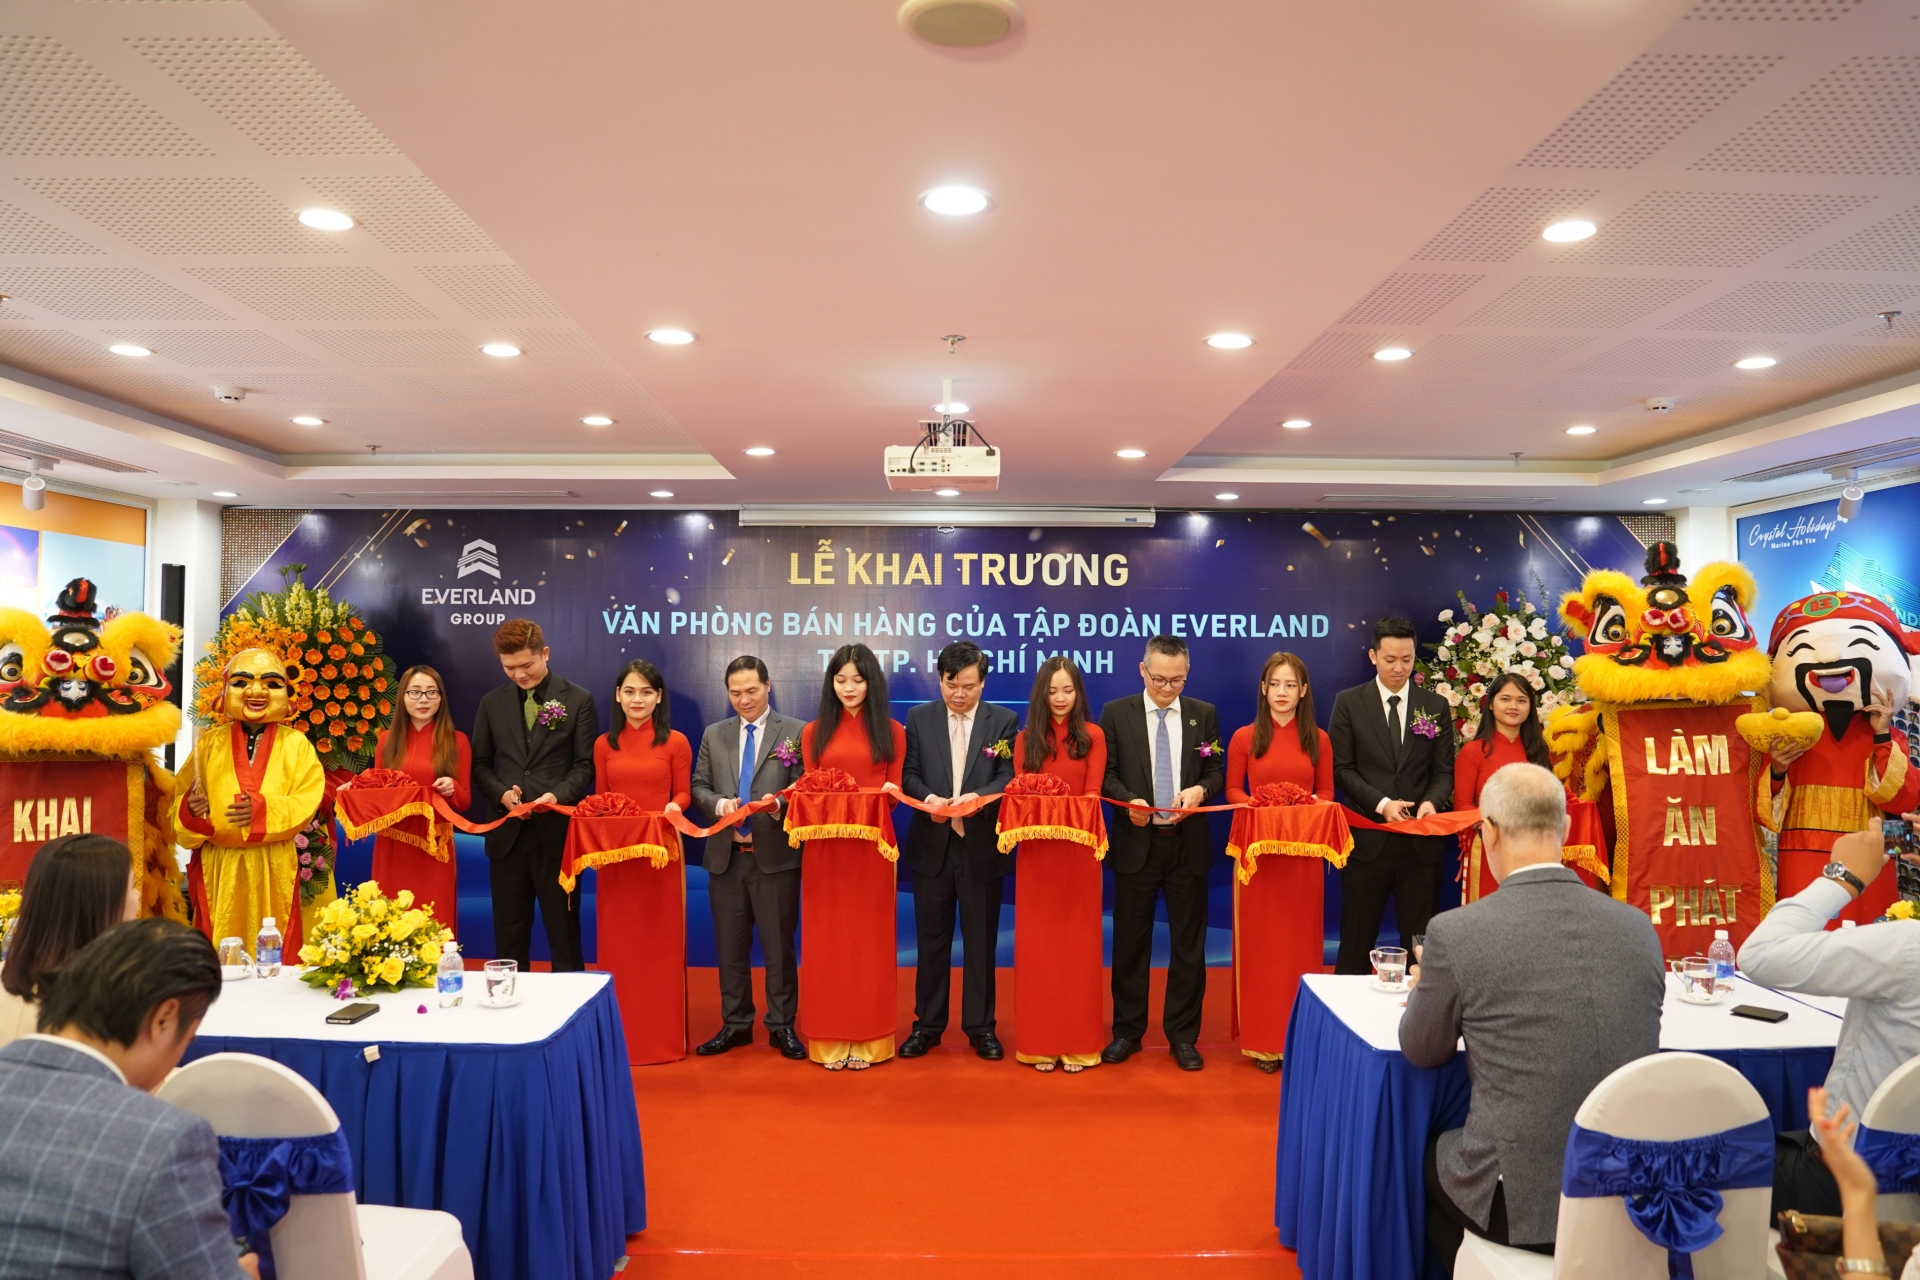 Tập đoàn Everland khai trương Văn phòng bán hàng tại Thành phố Hồ Chí Minh